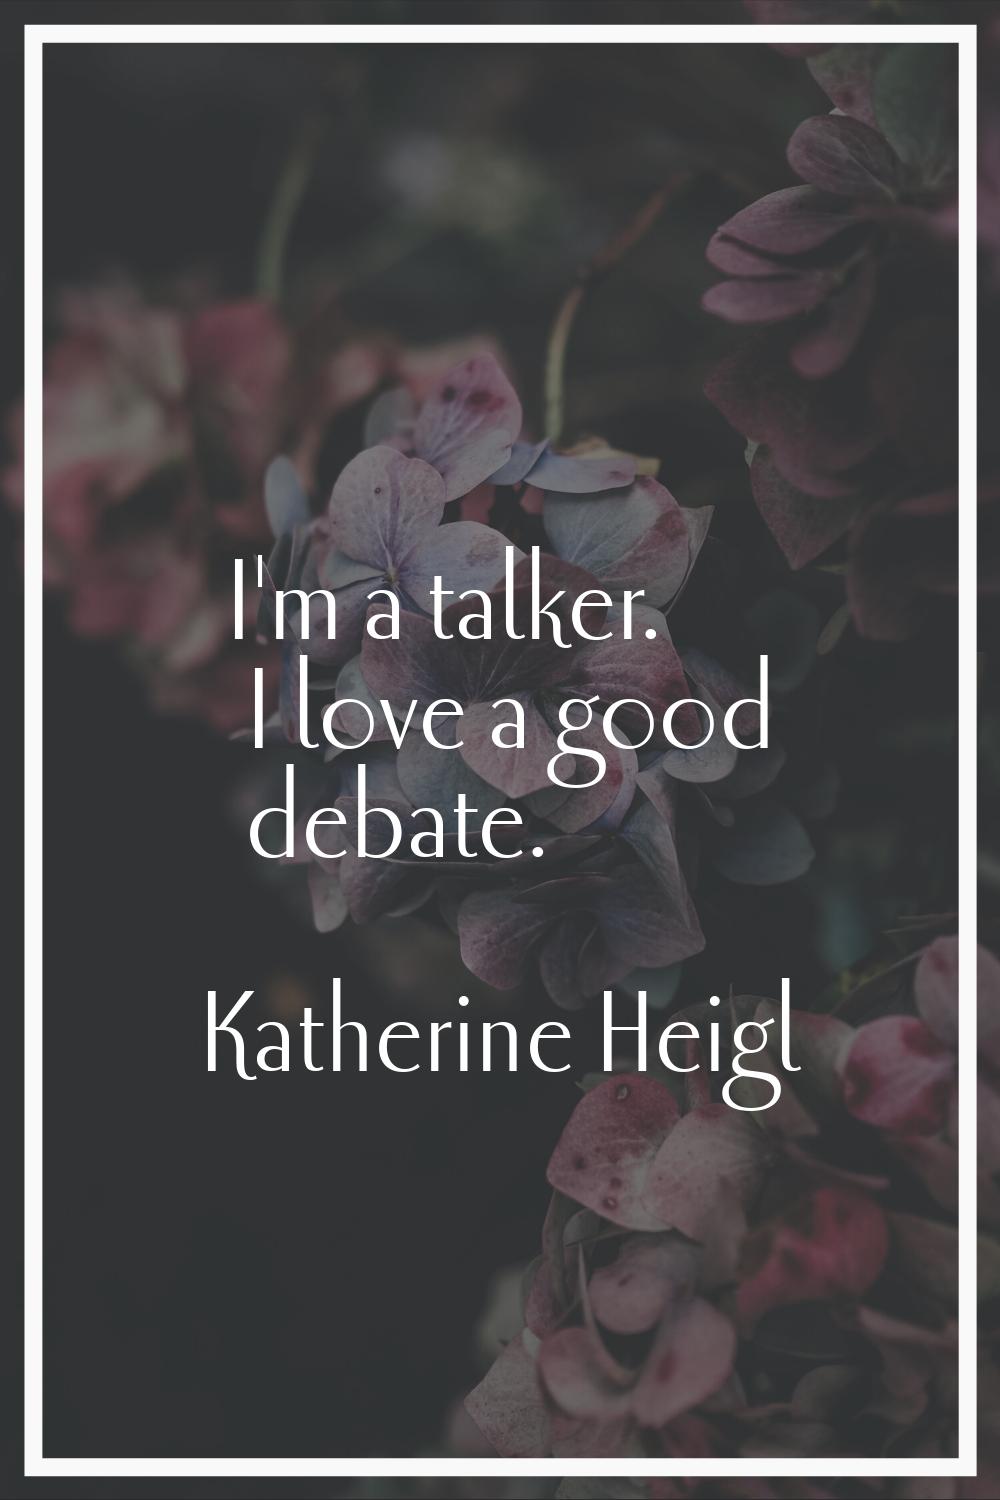 I'm a talker. I love a good debate.